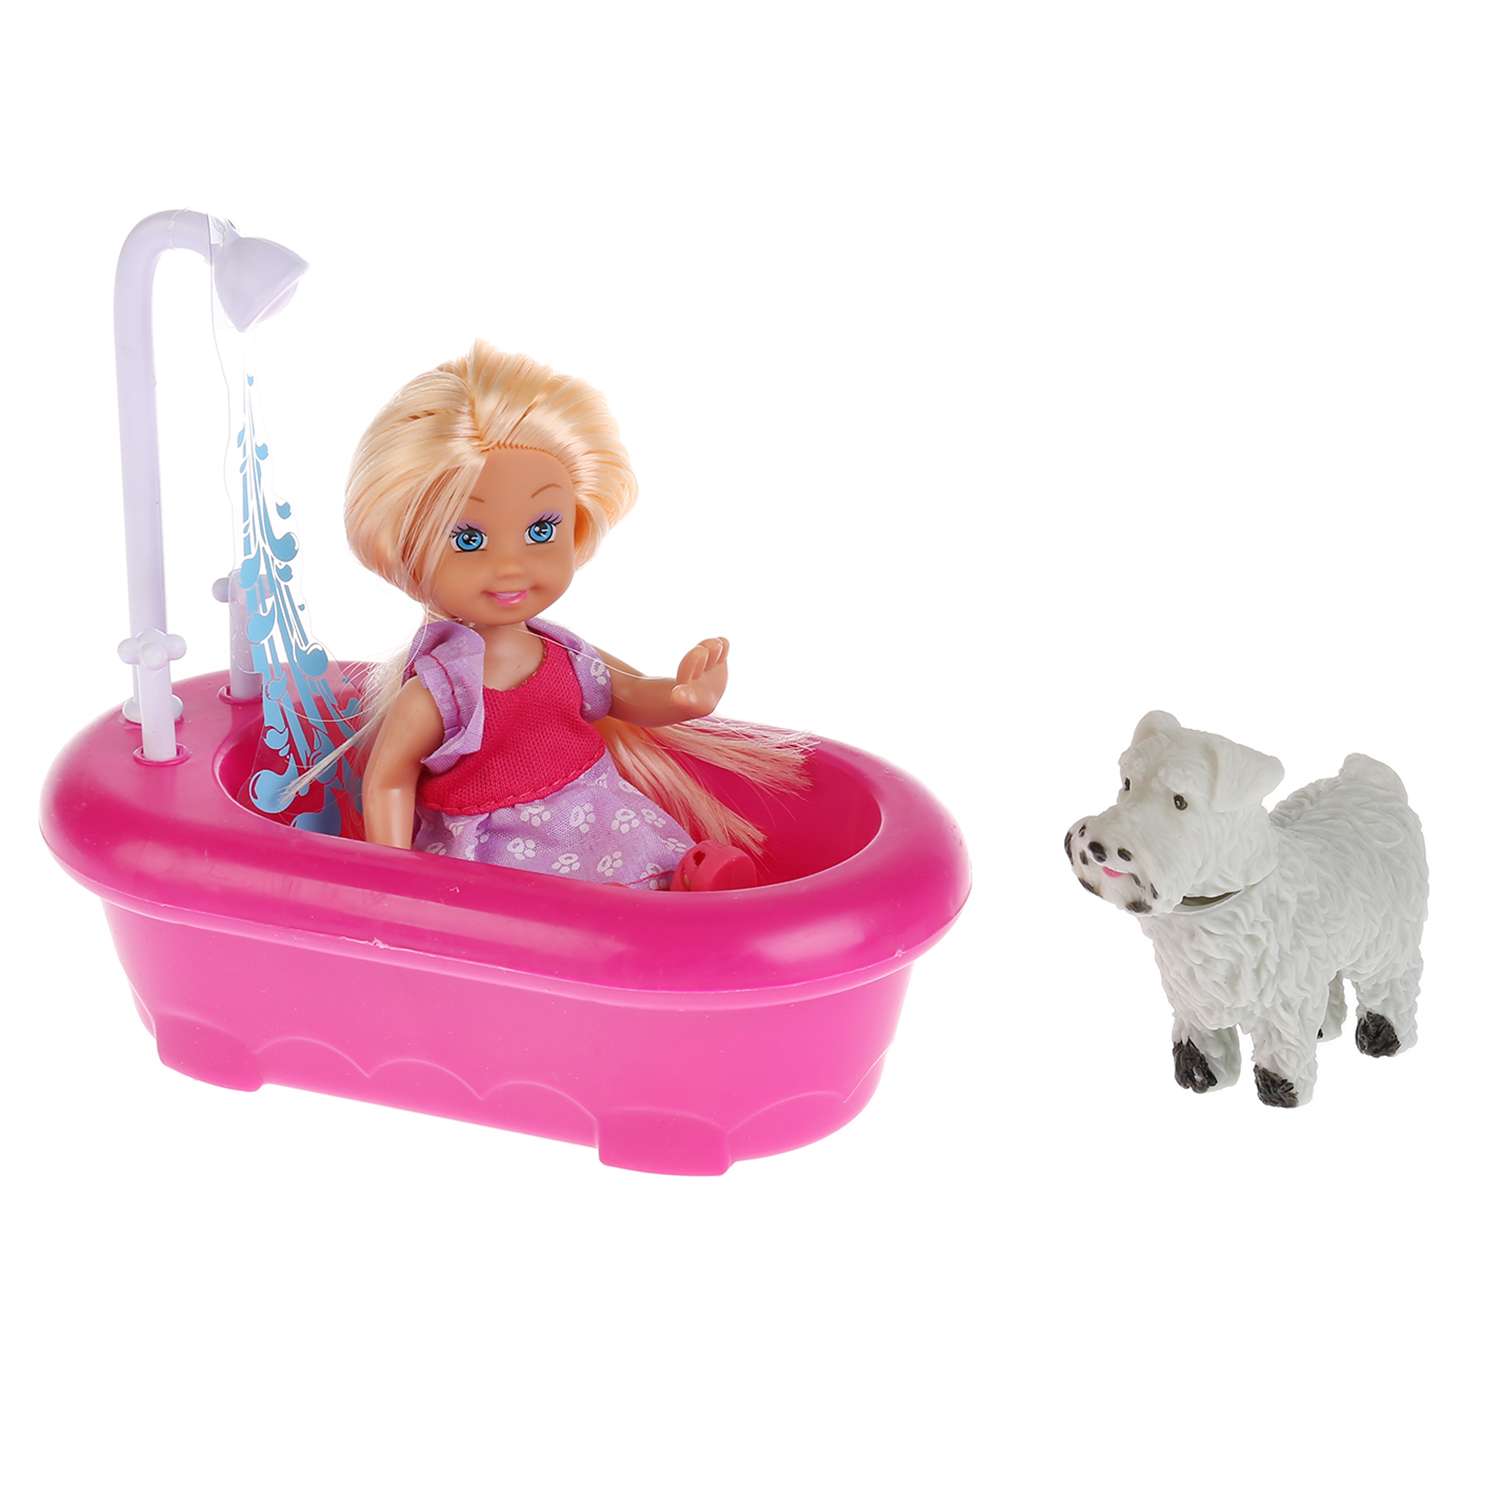 Кукла Карапуз Машенька 12см в наборе ванна с душем питомец аксессуары 259646 259646 - фото 1